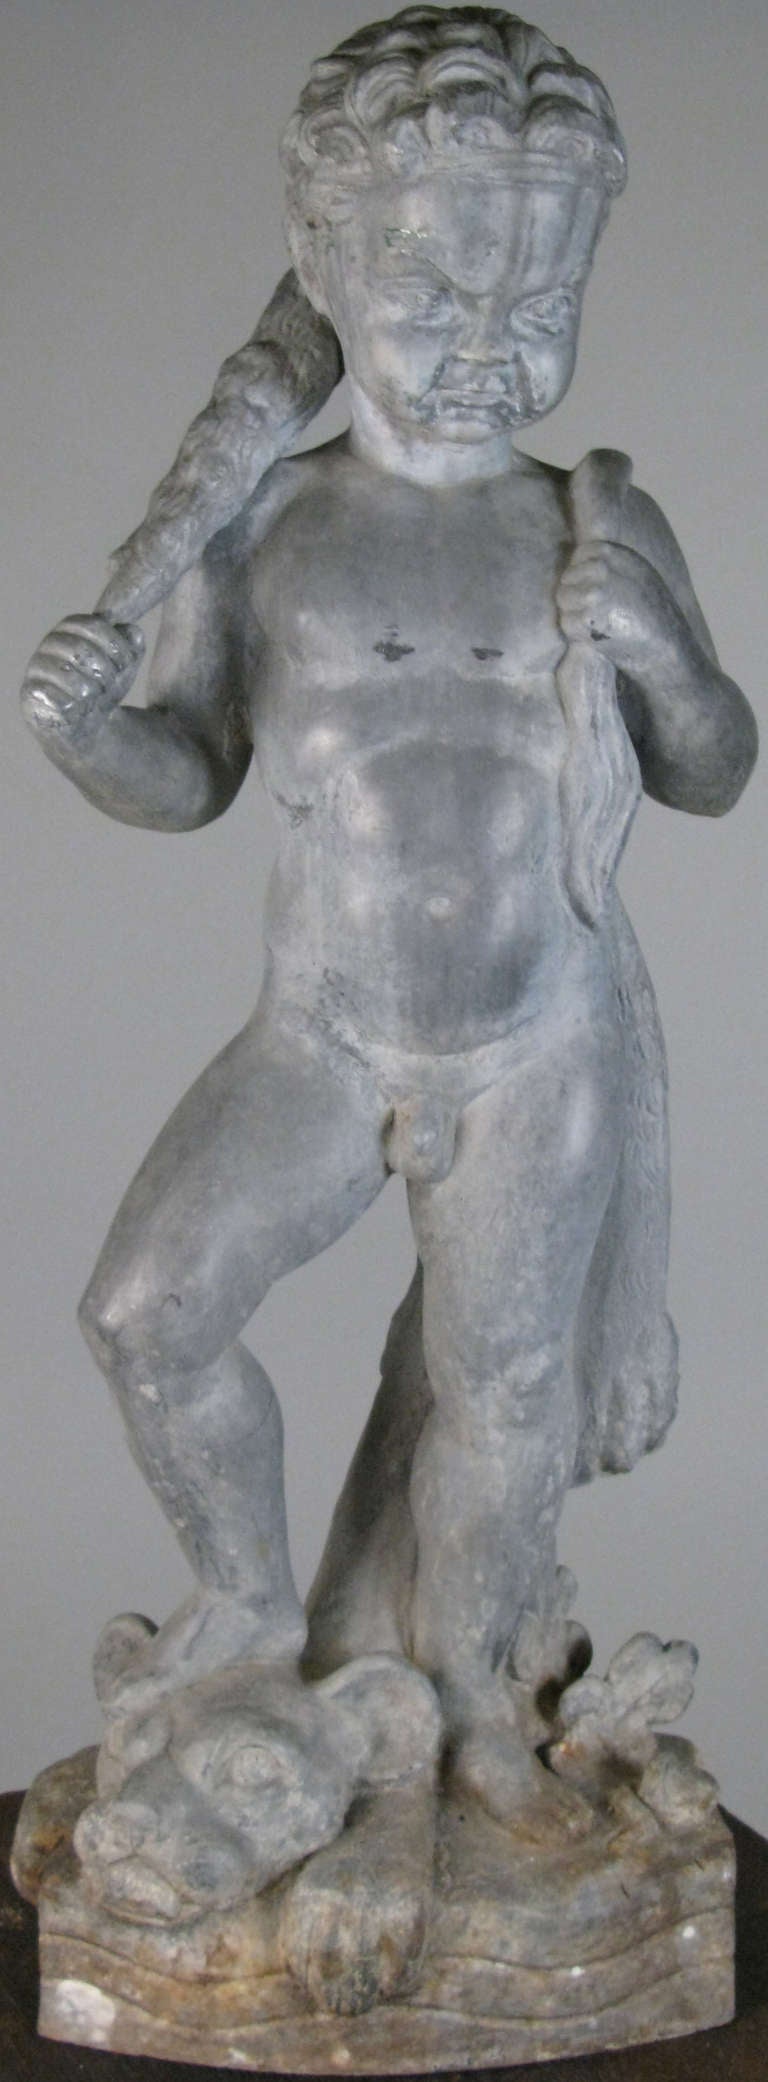 an antique Hercules cast iron sculpture by artist Wheeler Williams.